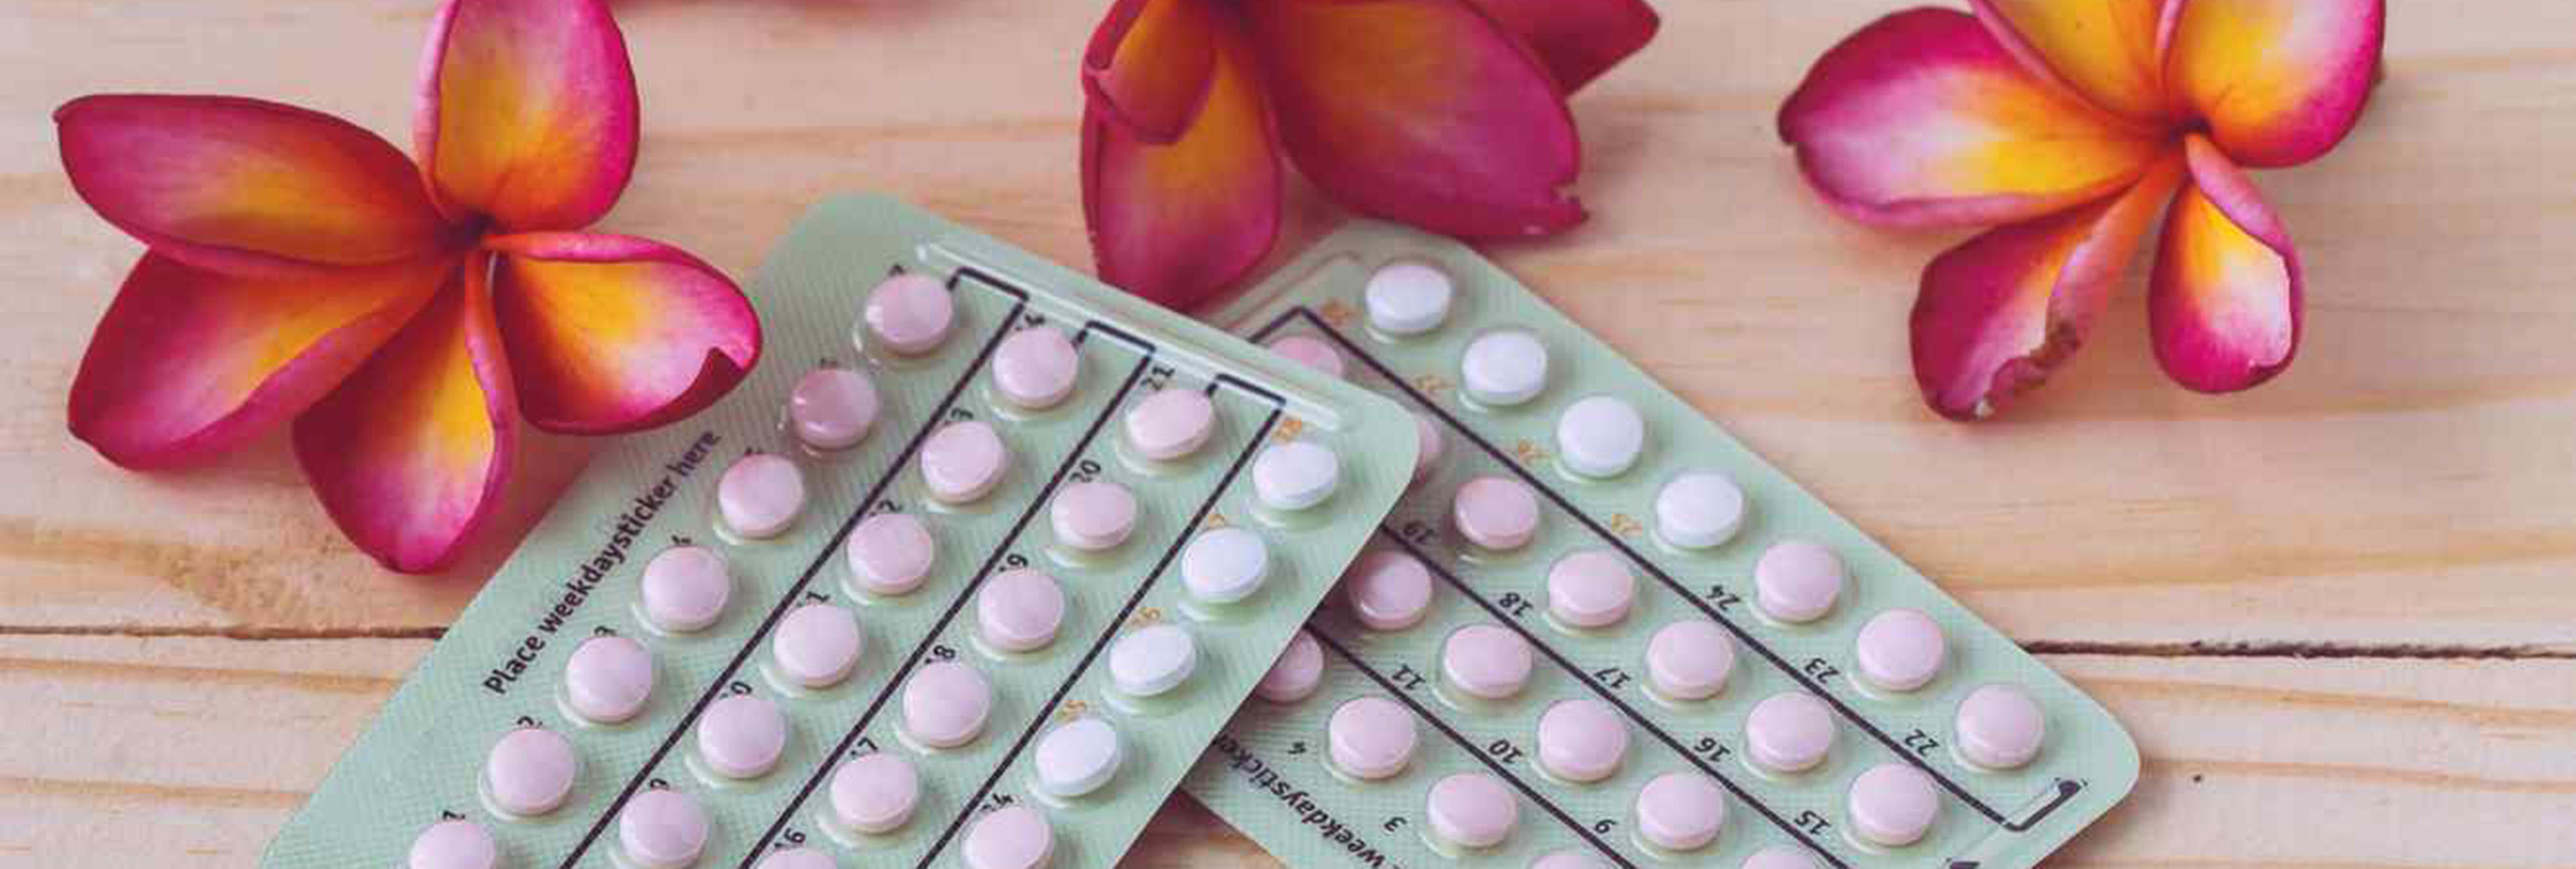 Las pastillas anticonceptivas le han costado la vida a una joven de 26 años...